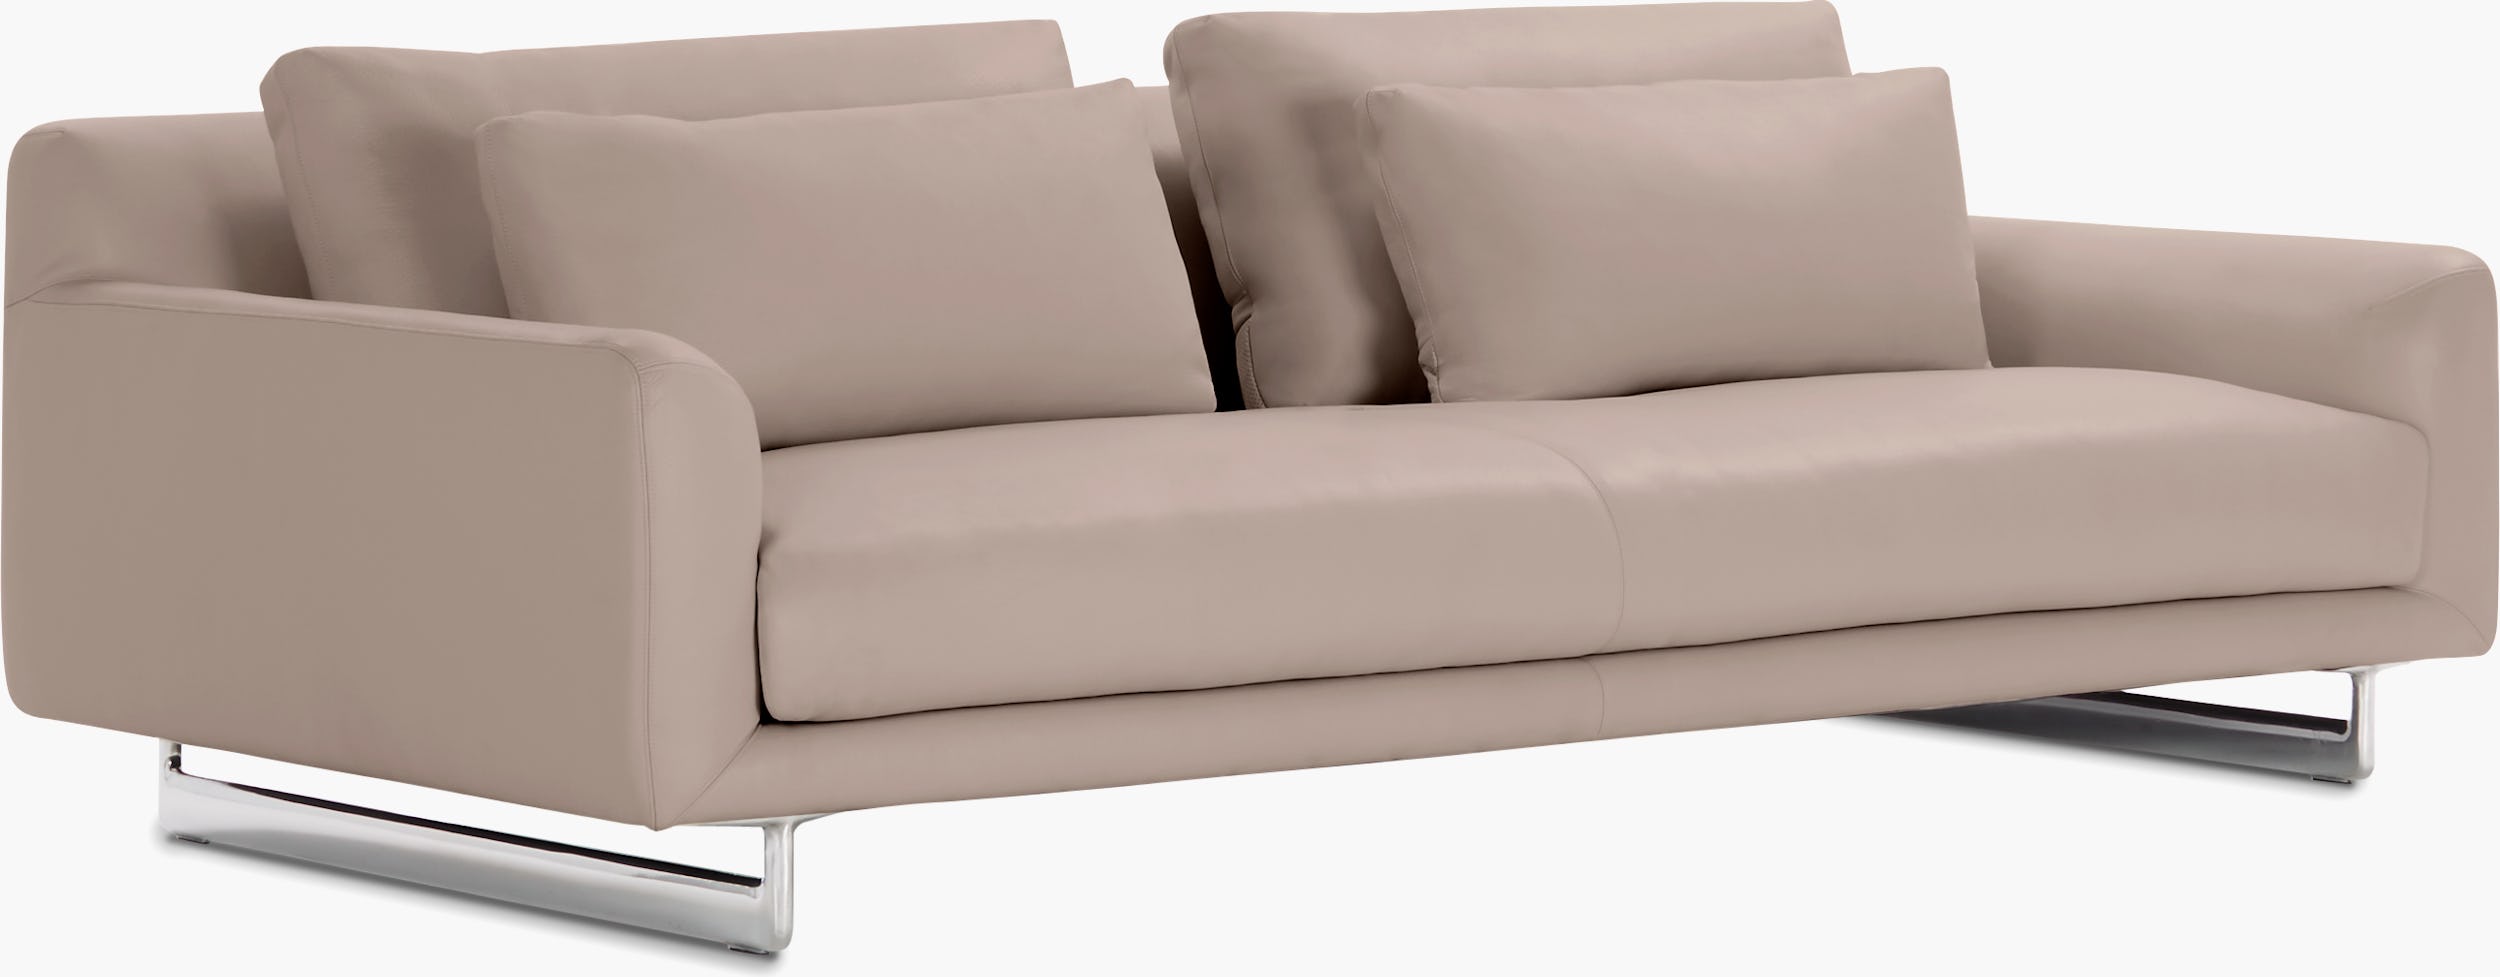 Lecco Sofa – Design Within Reach